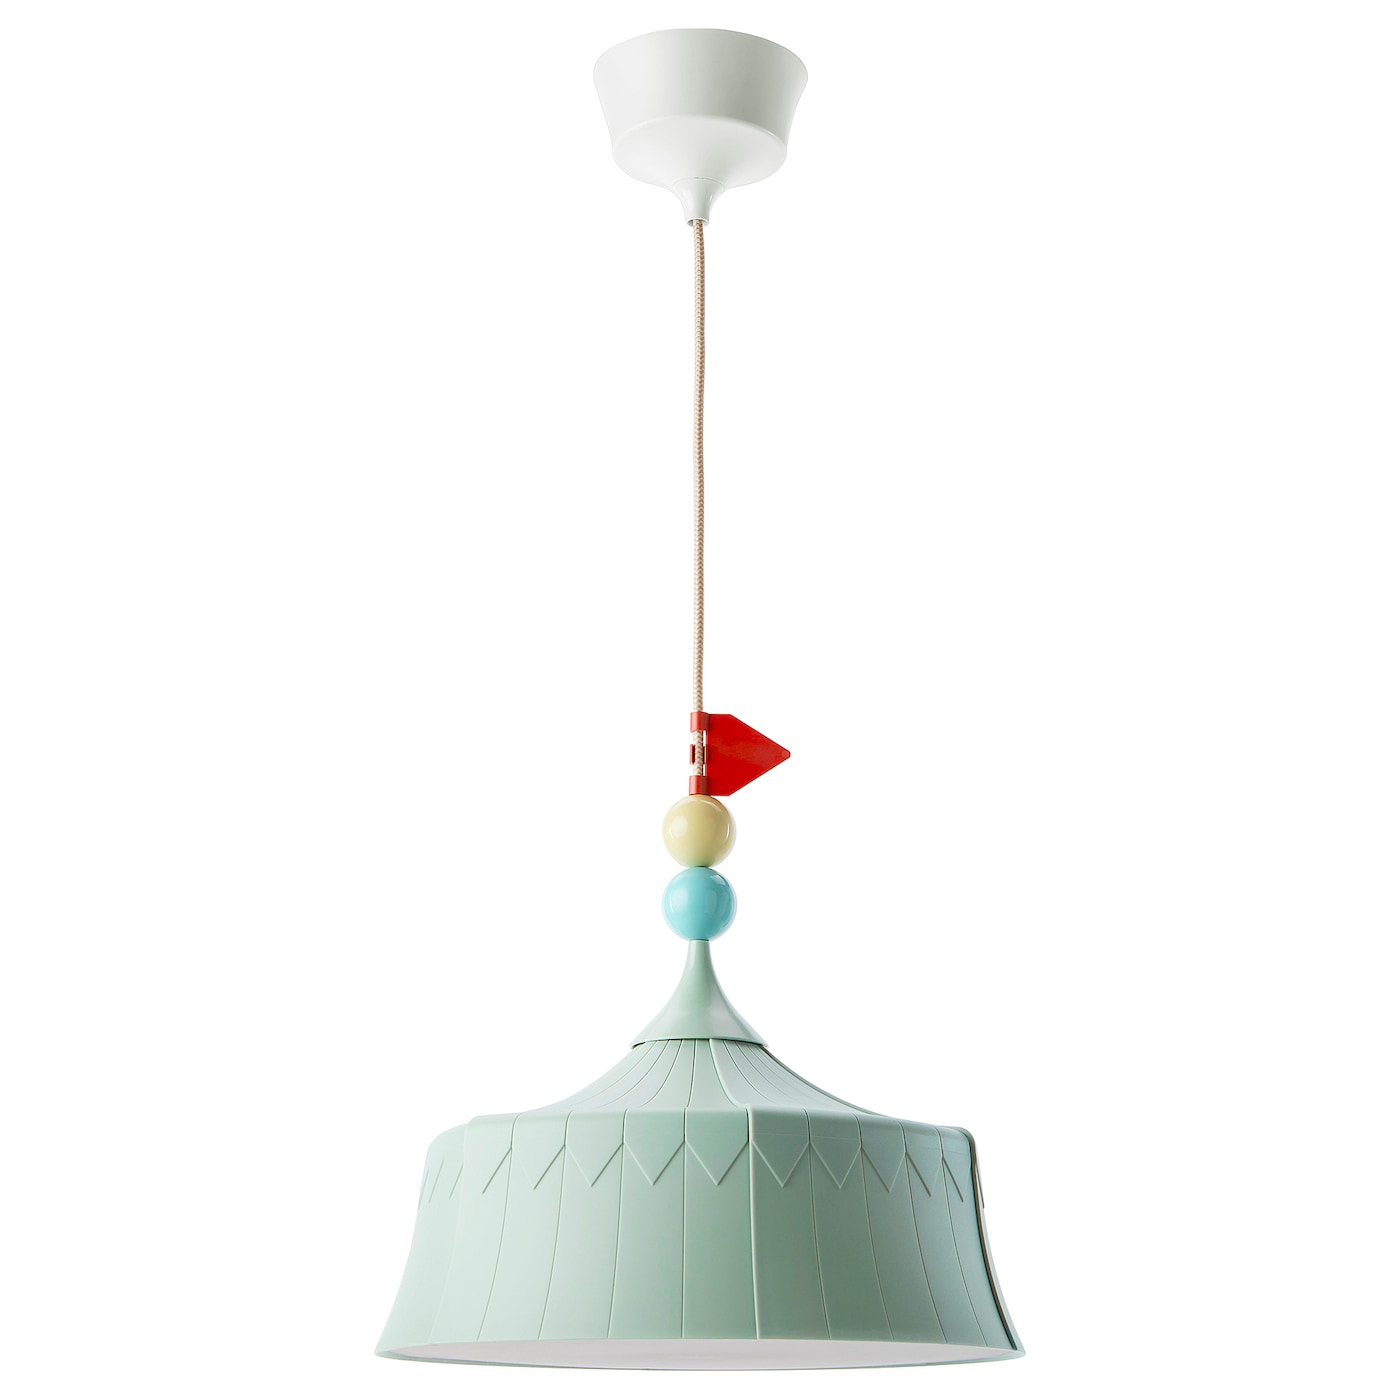 Подвесной светильник - TROLLBO IKEA / ТРОЛЛБО ИКЕА, 37 см, голубой